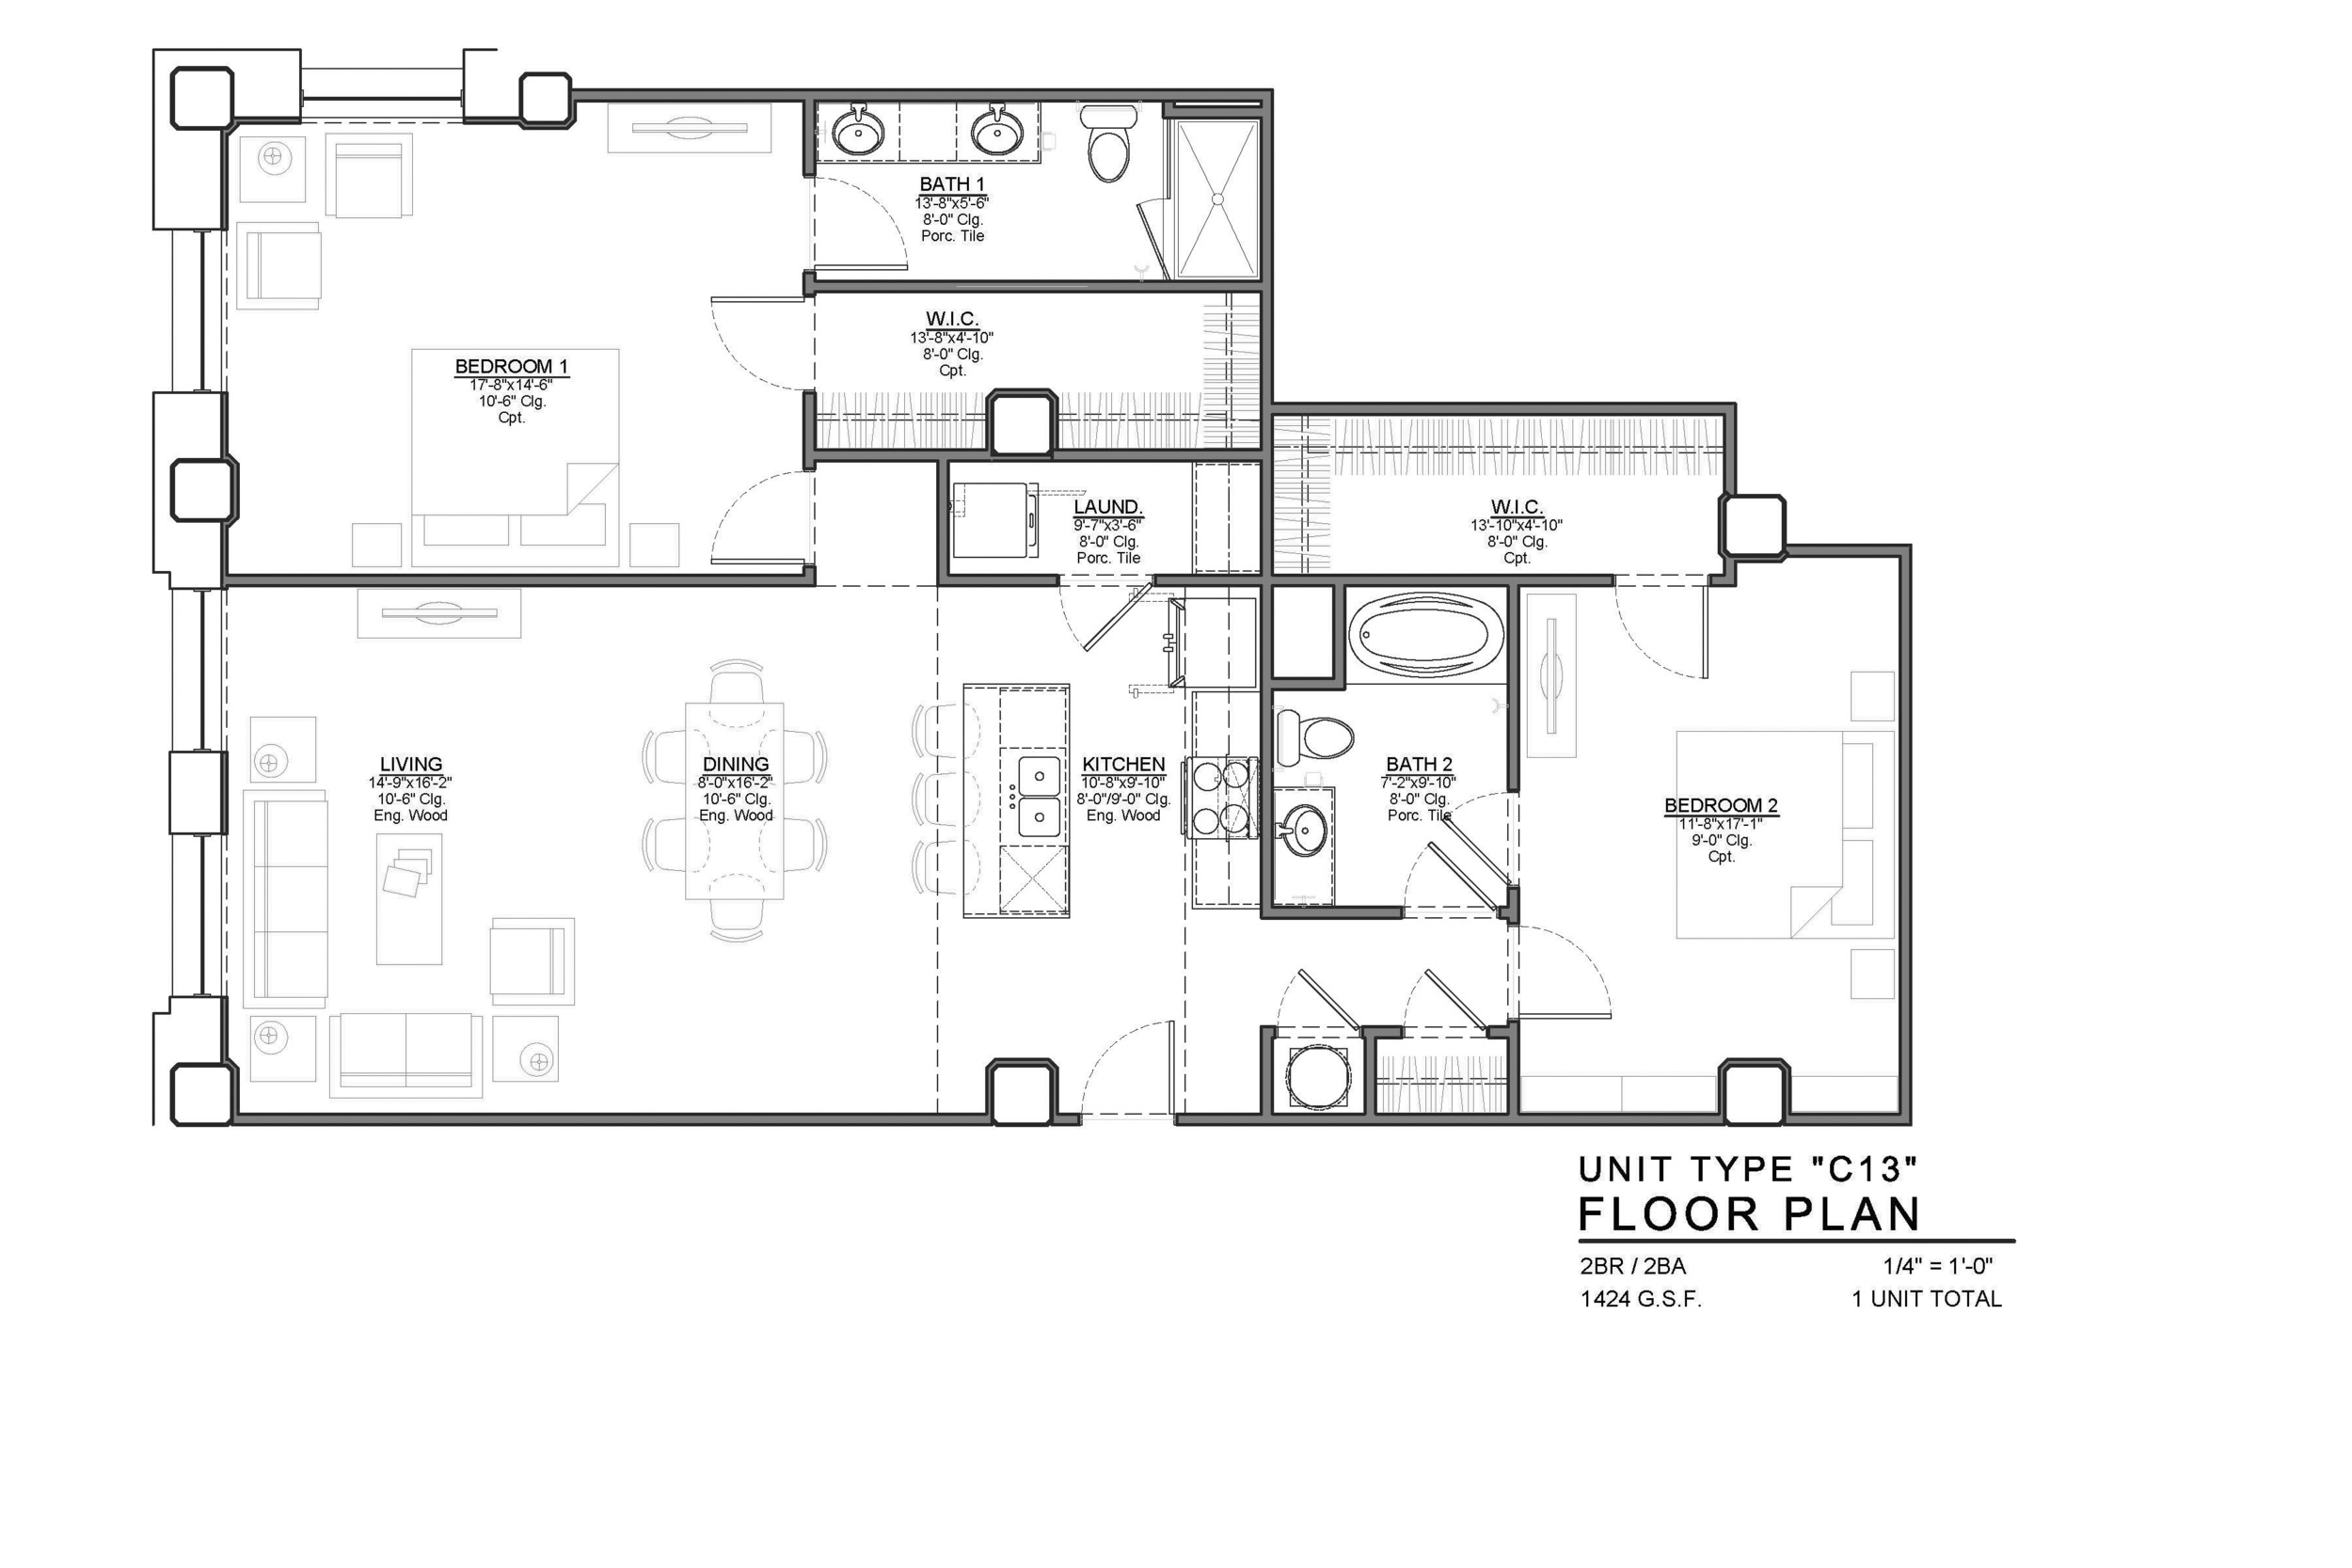 C13 FLOOR PLAN: 2 BEDROOM / 2 BATH